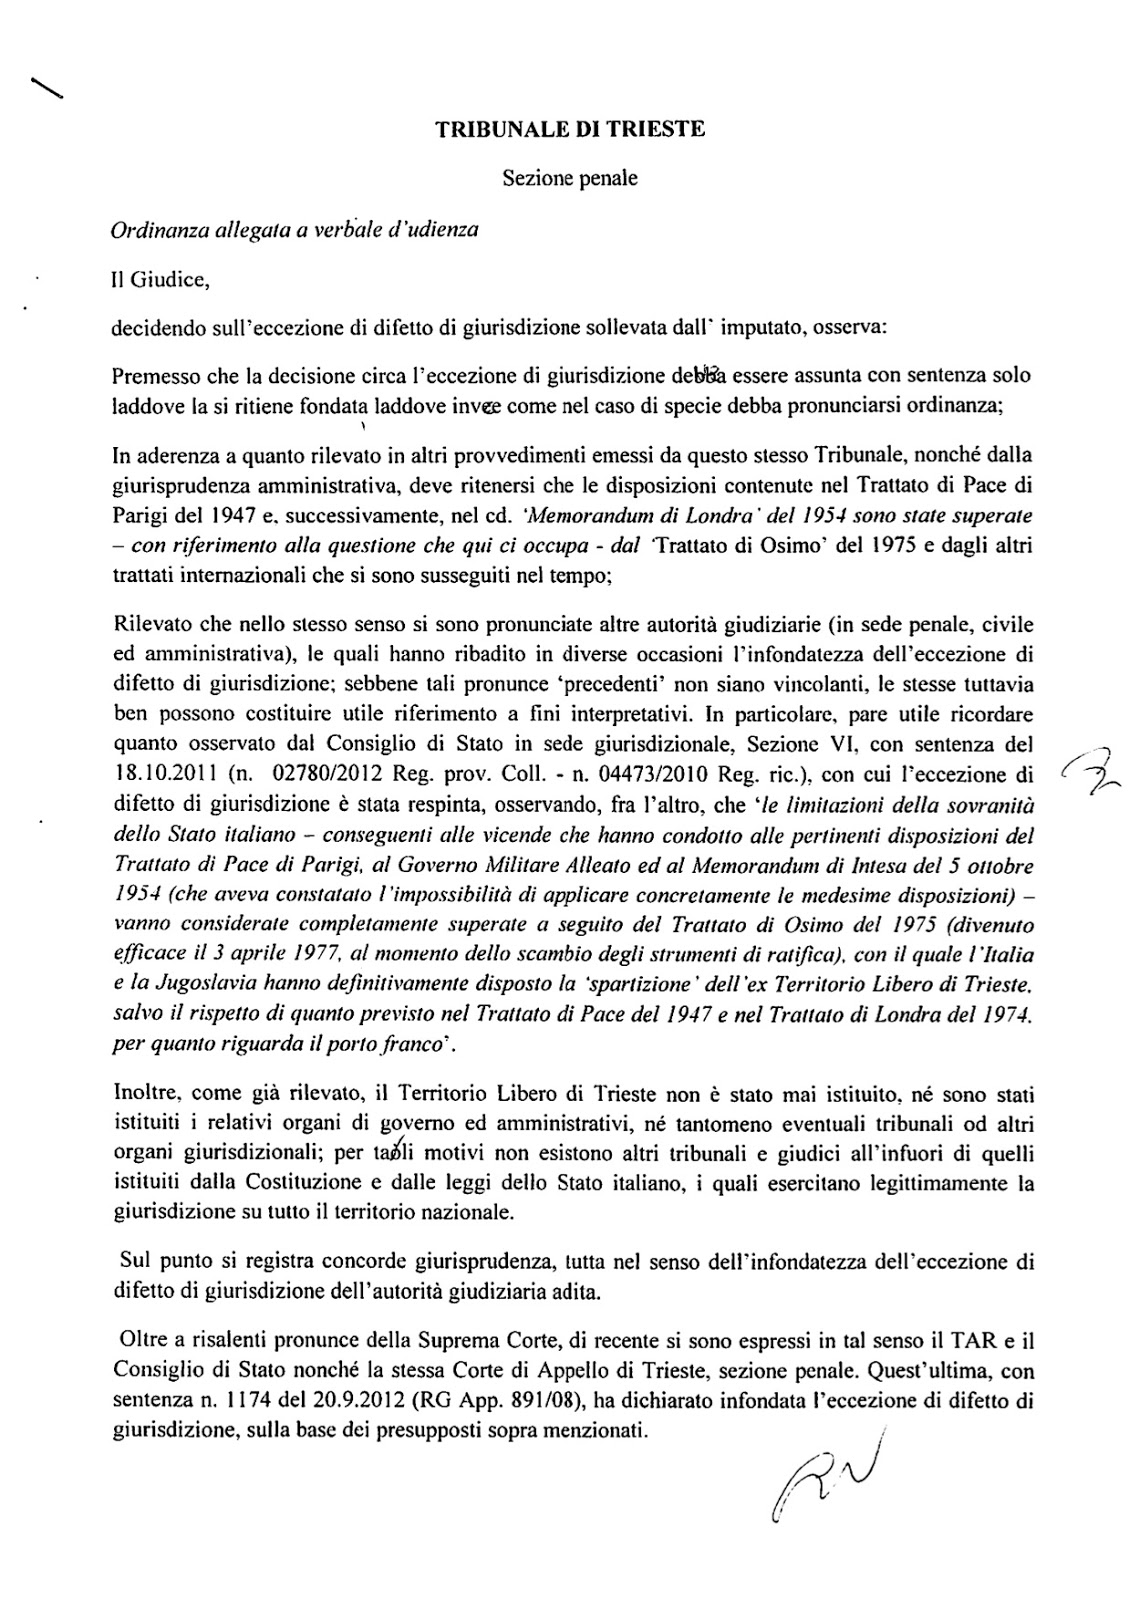   Di seguito: una delle ultime ordinanze (23 dicembre 2015) in vìolazione del Trattato di Pace fatte dei giudici italiani insediati nel Tribunale di Trieste. Il giudice ritiene che il Trattato di Pace, la Risoluzione S/RES/16 (1947) ed il Memorandum di Londra siano "superati" dal Trattato bilaterale c.d. di Osimo. 